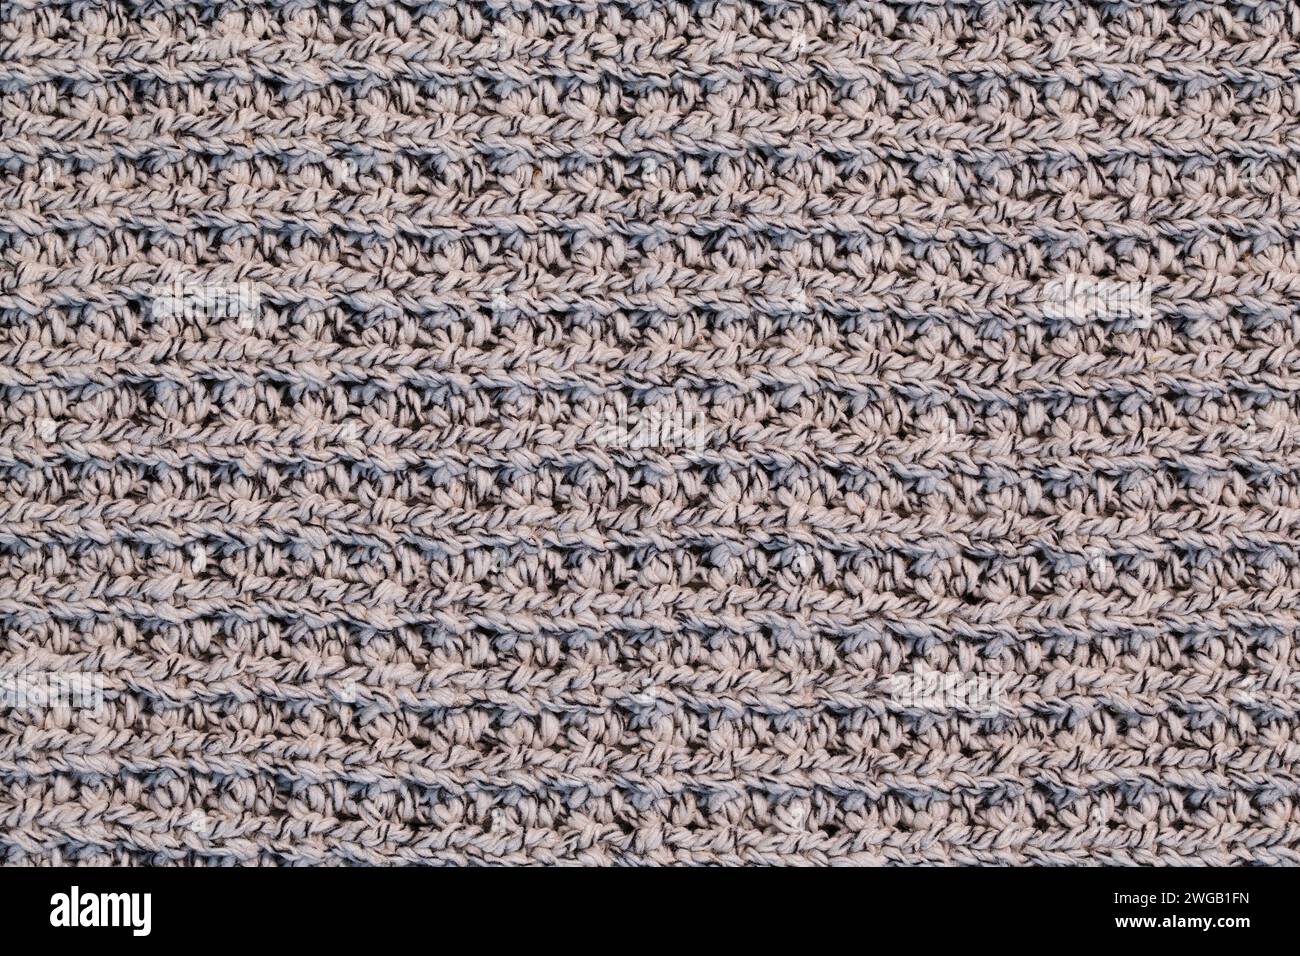 Un frammento di un caldo maglione lavorato a maglia realizzato in fili di lana in una tonalità beige. Foto Stock